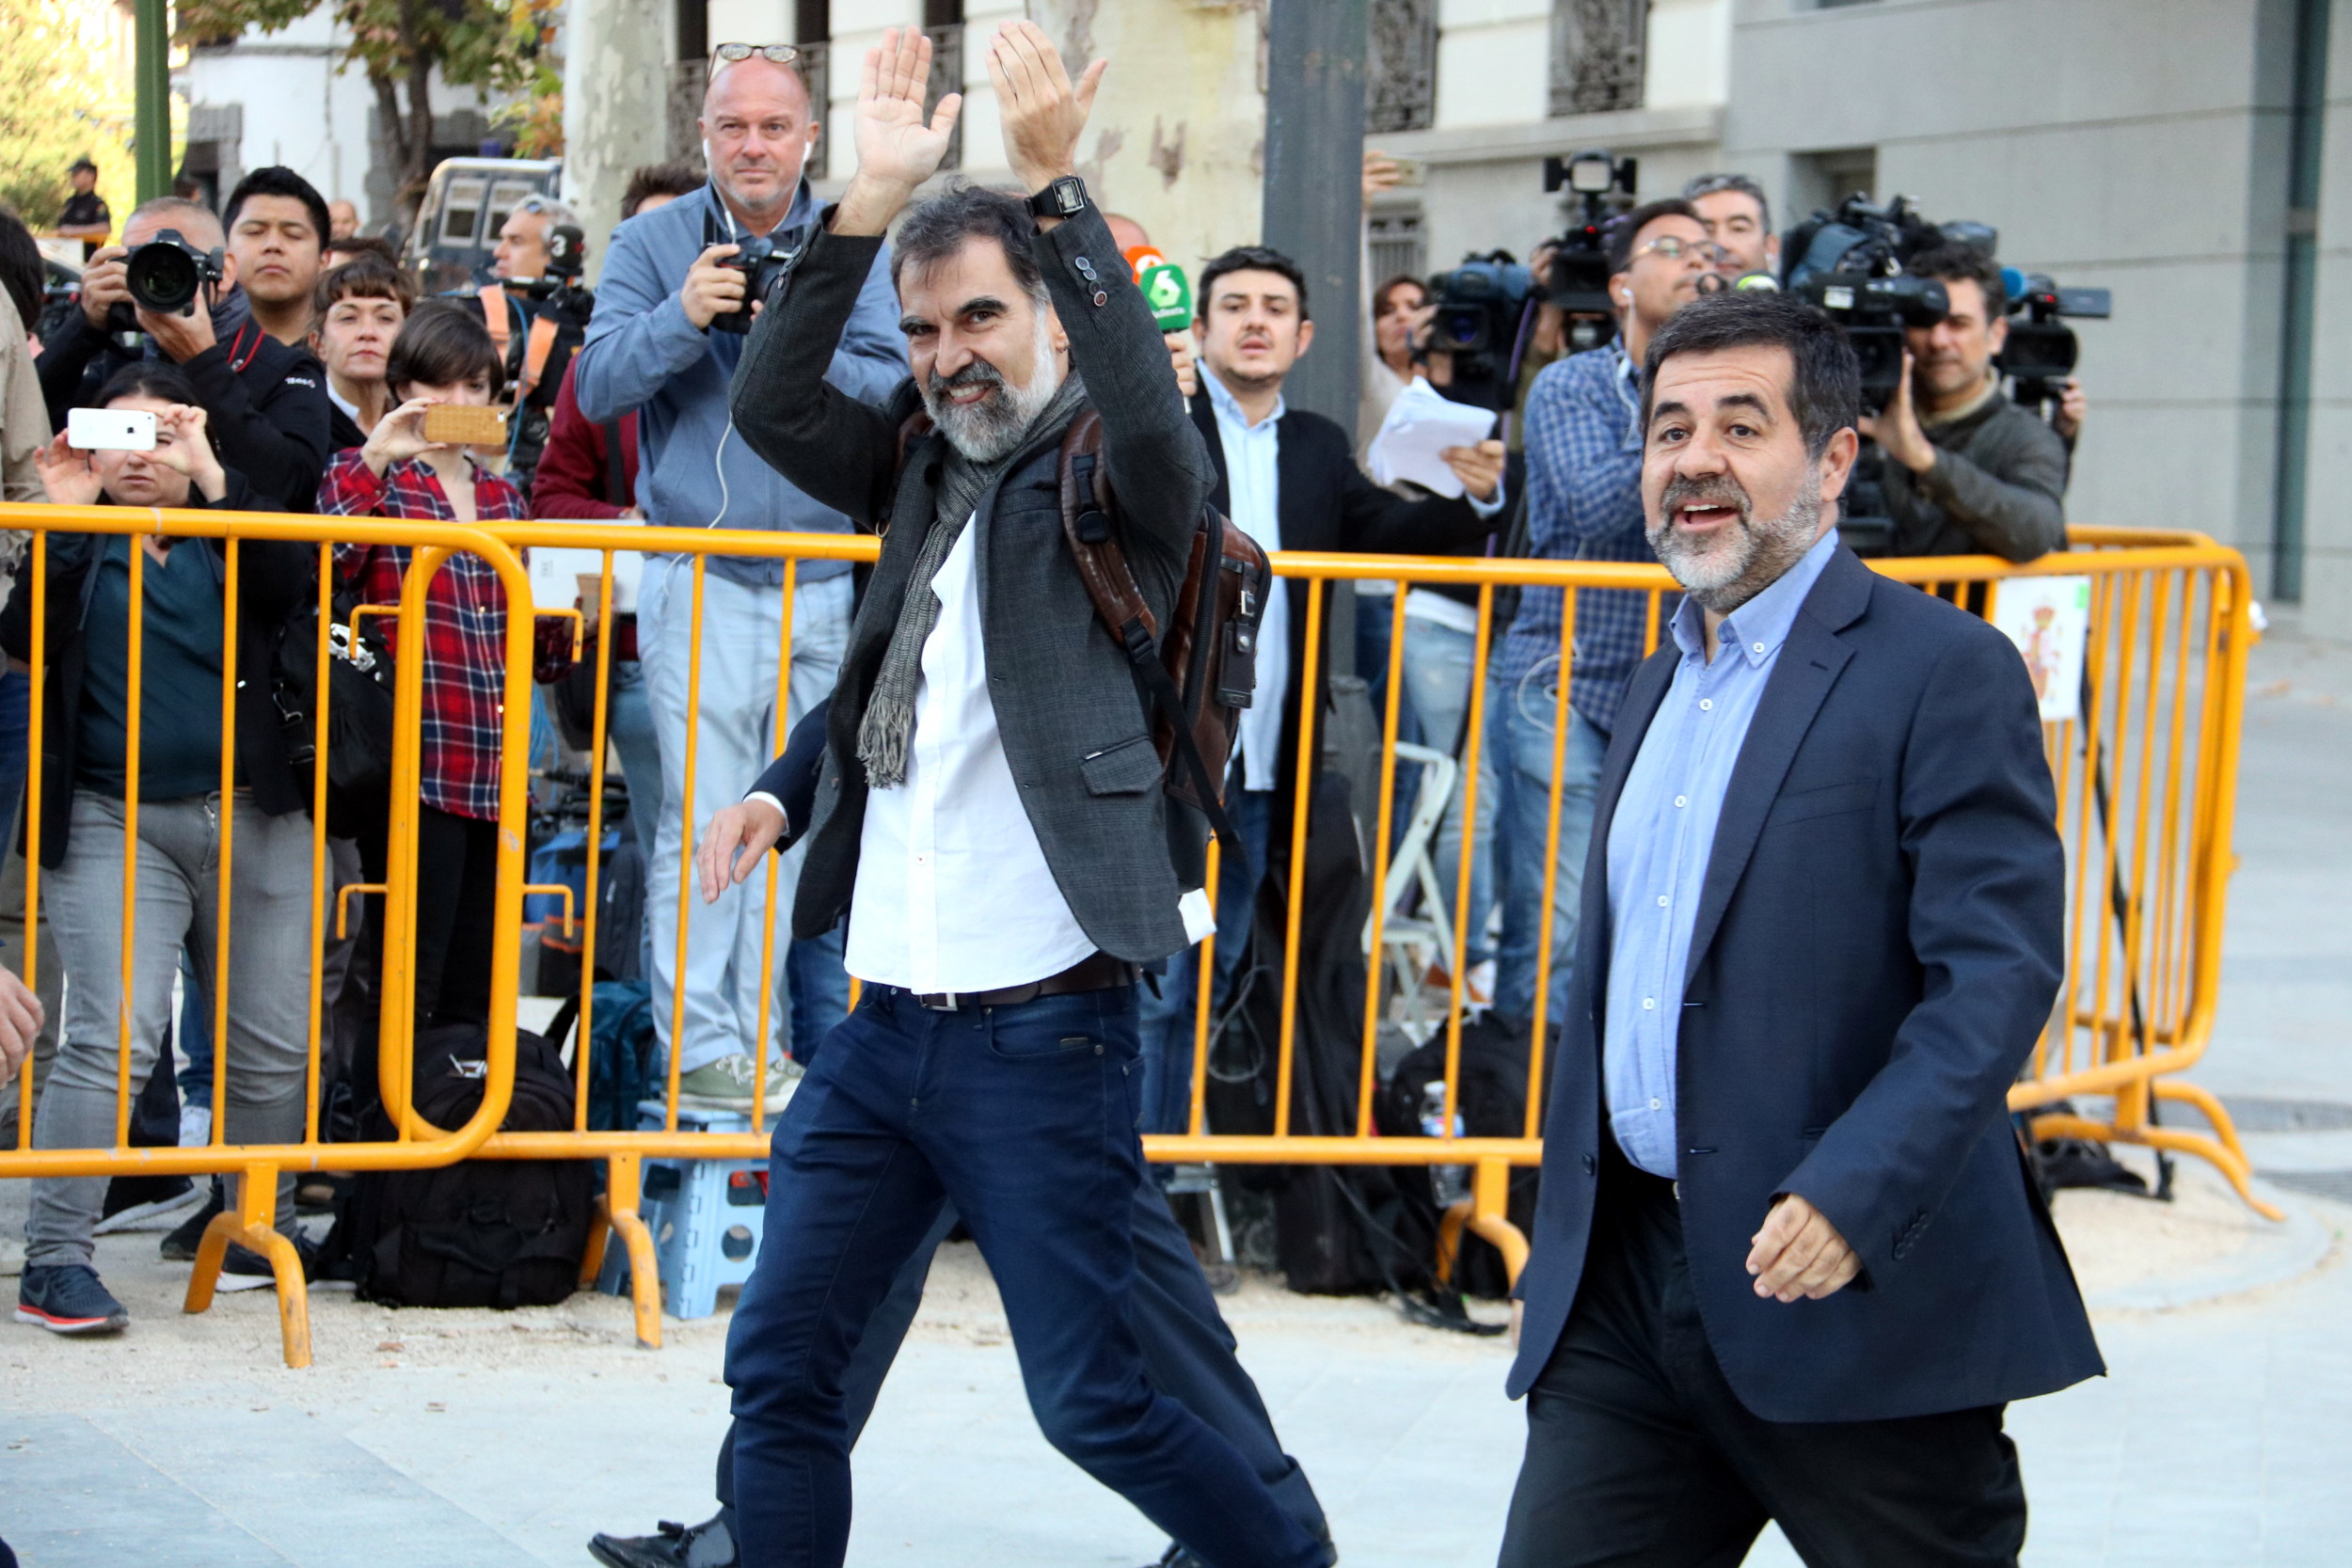 Òmnium Cultural president, Jordi Cuixart (left), and Catalan National Assembly, Jordi Sánchez, arrive in Madrid on Monday (by Roger Pi de Cabanyes)